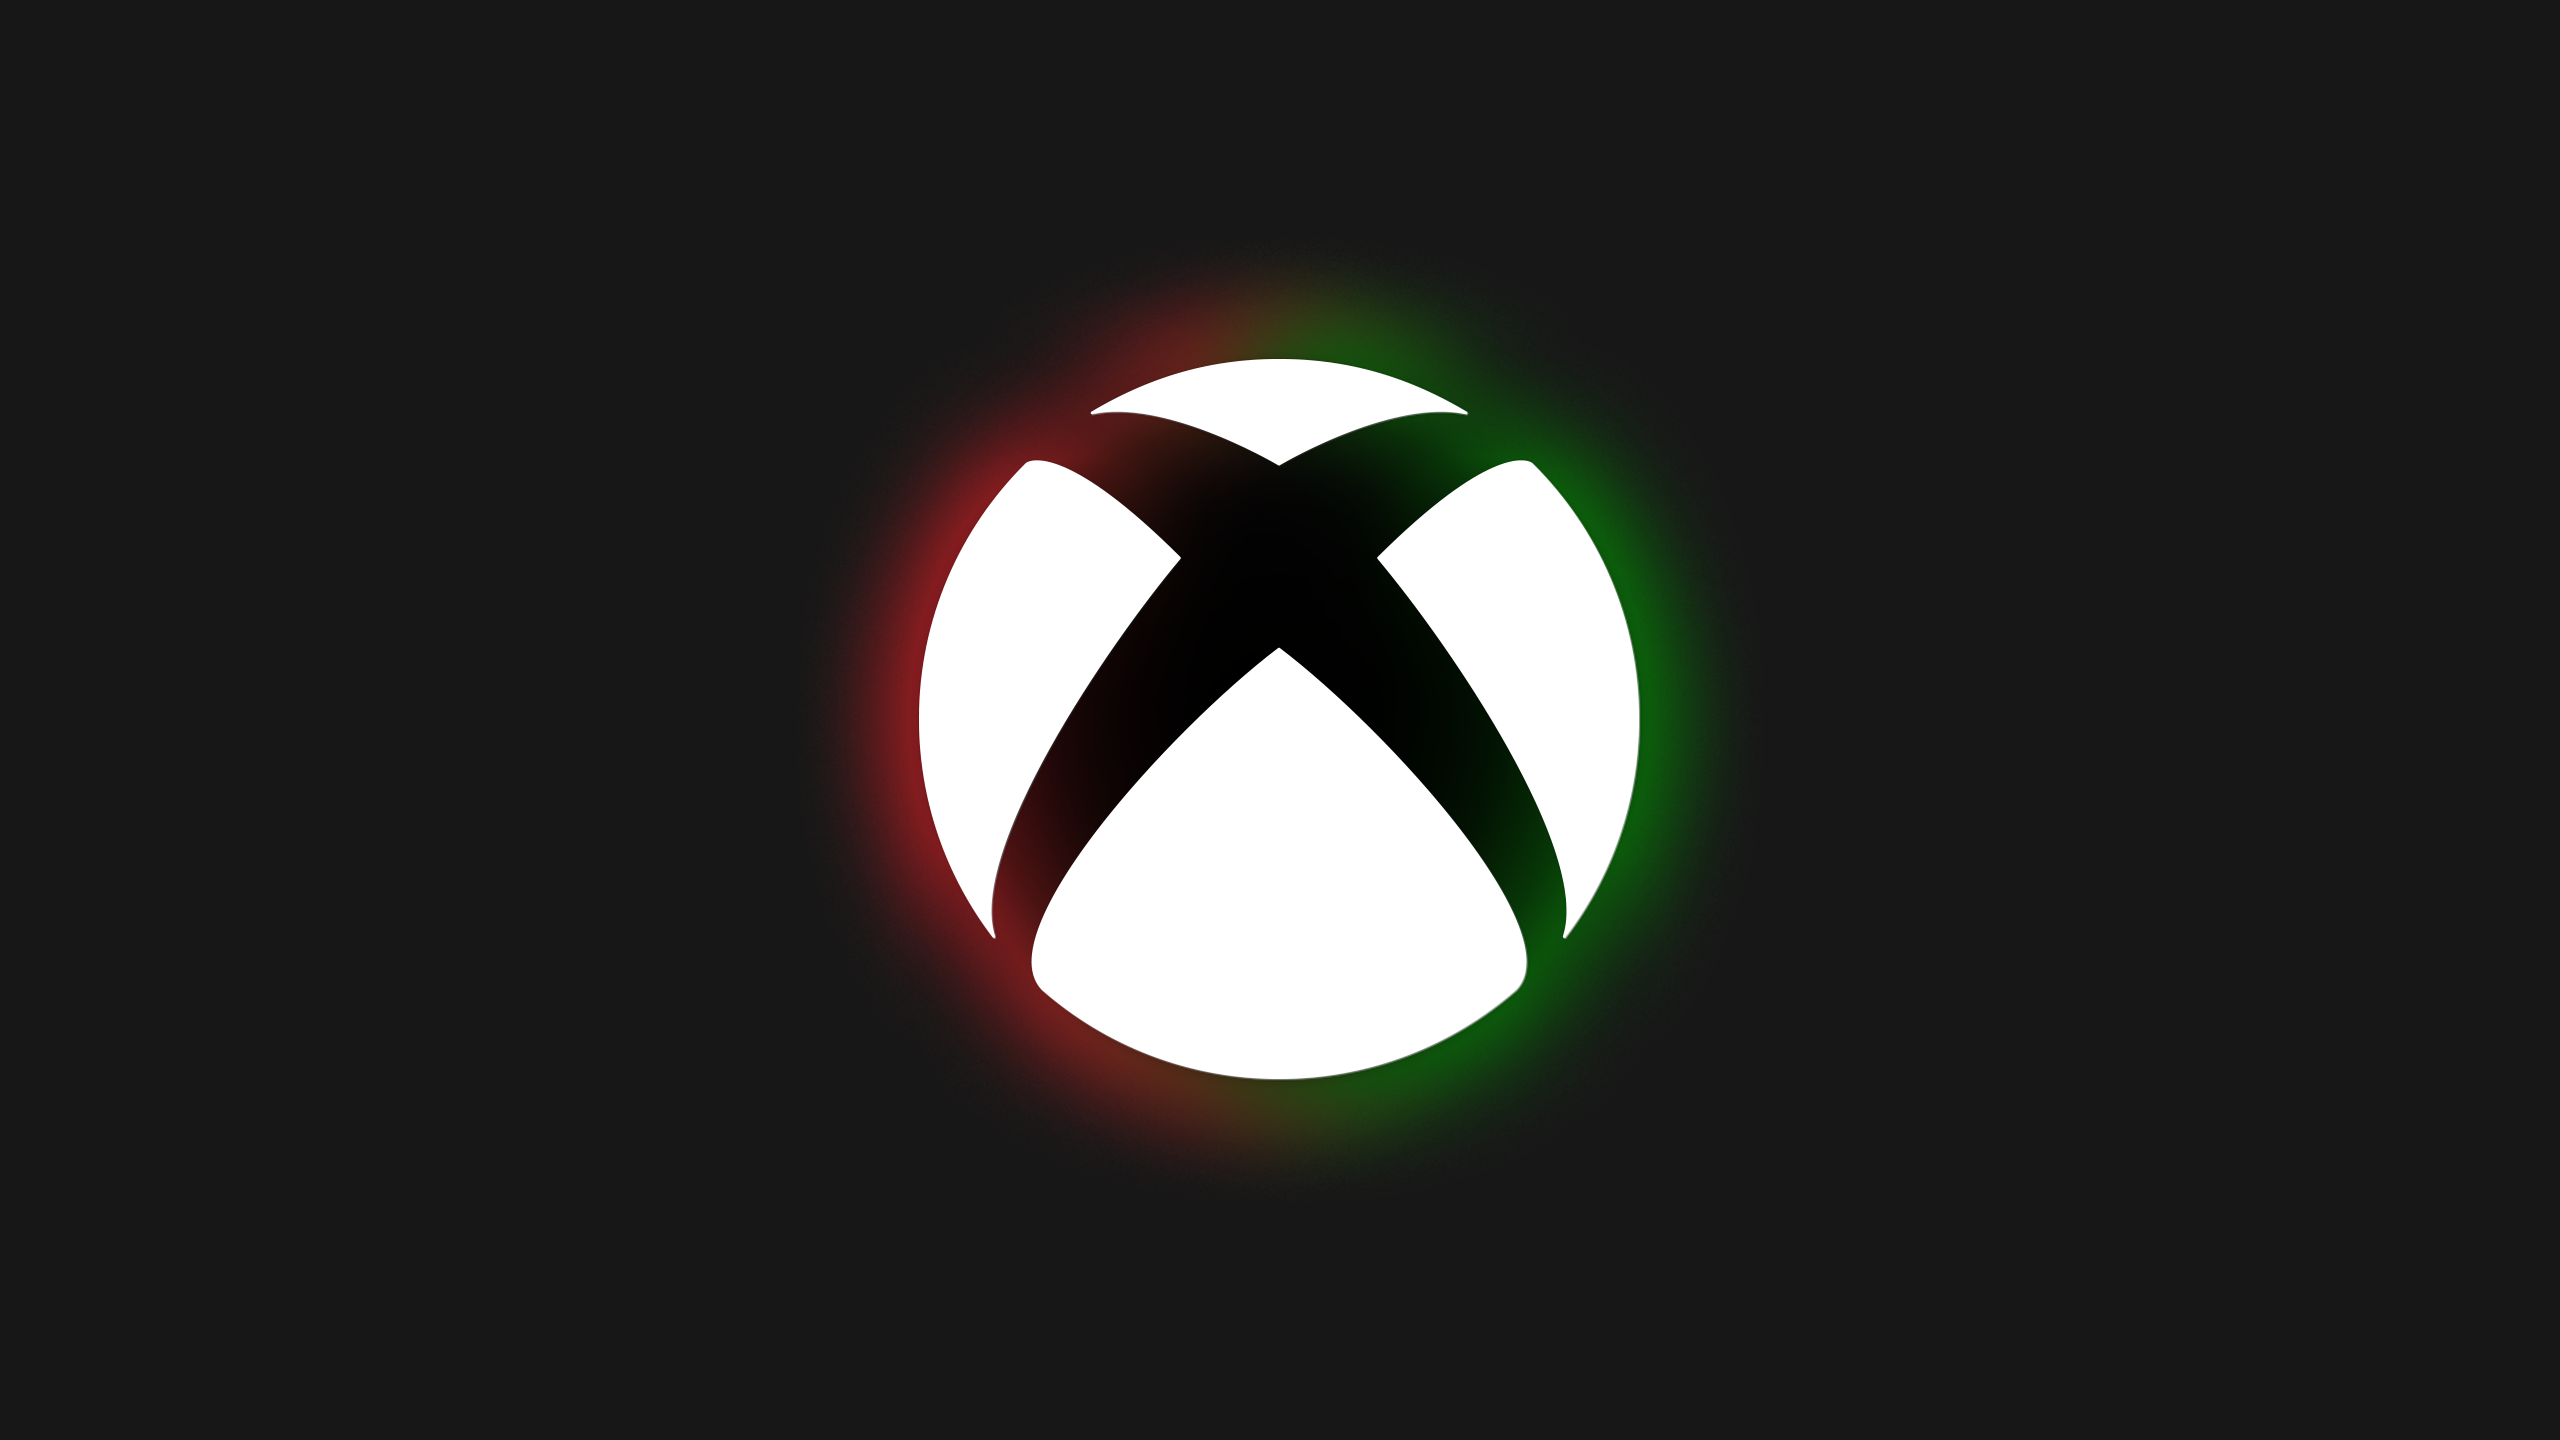 Cùng khám phá lịch sử máy chơi game đầy tính biểu tượng của Xbox. Với sự kết hợp giữa đen trắng đầy tinh tế, Xbox Lịch sử Đen sẽ không làm bạn thất vọng.